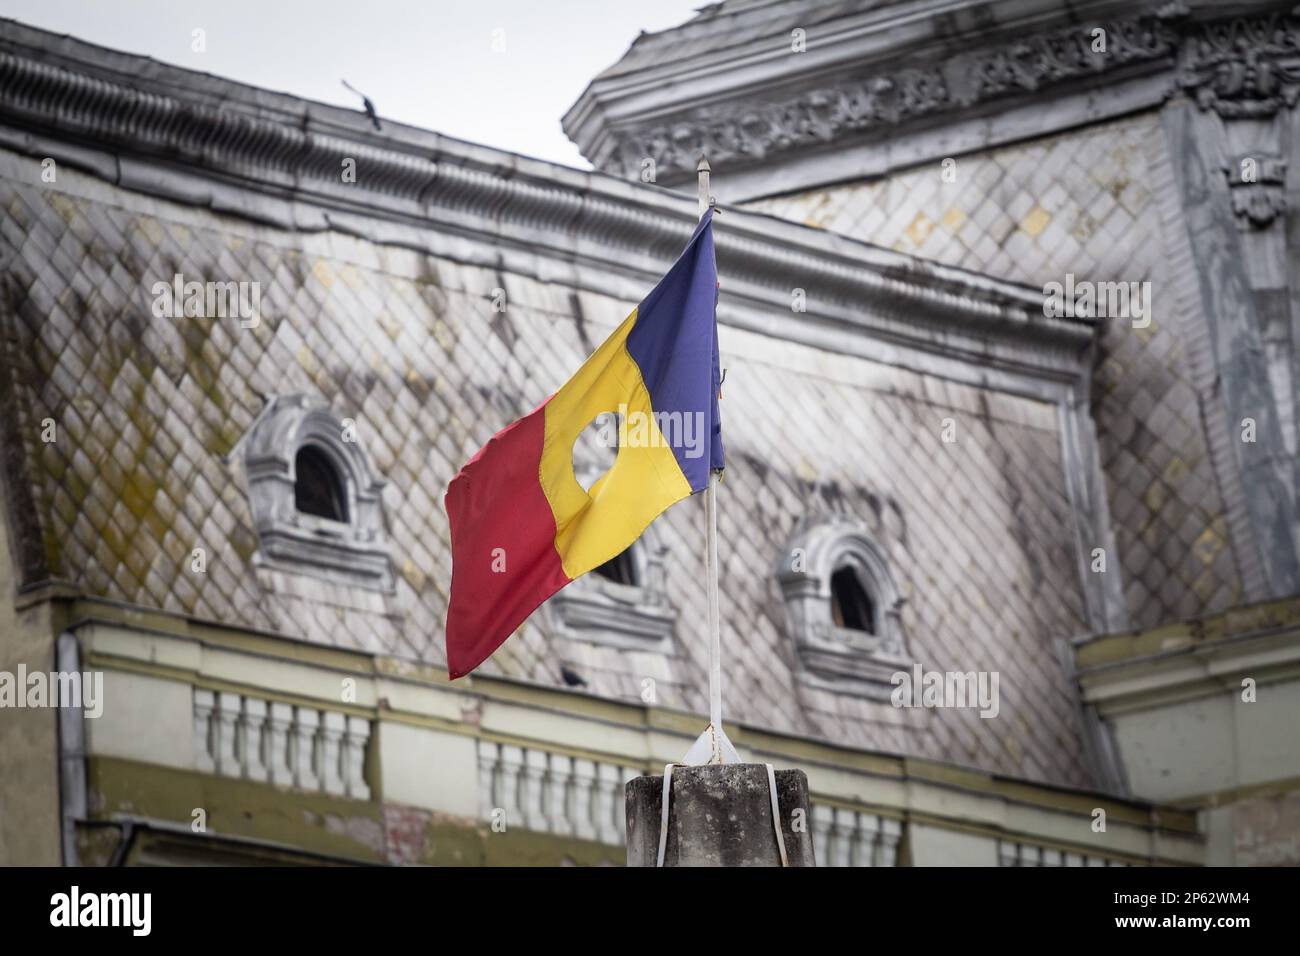 Immagine di una bandiera rumena che vola in aria a Timisoara, la capitale della Romania. La bandiera nazionale della Romania è un tricolore con fascia verticale Foto Stock